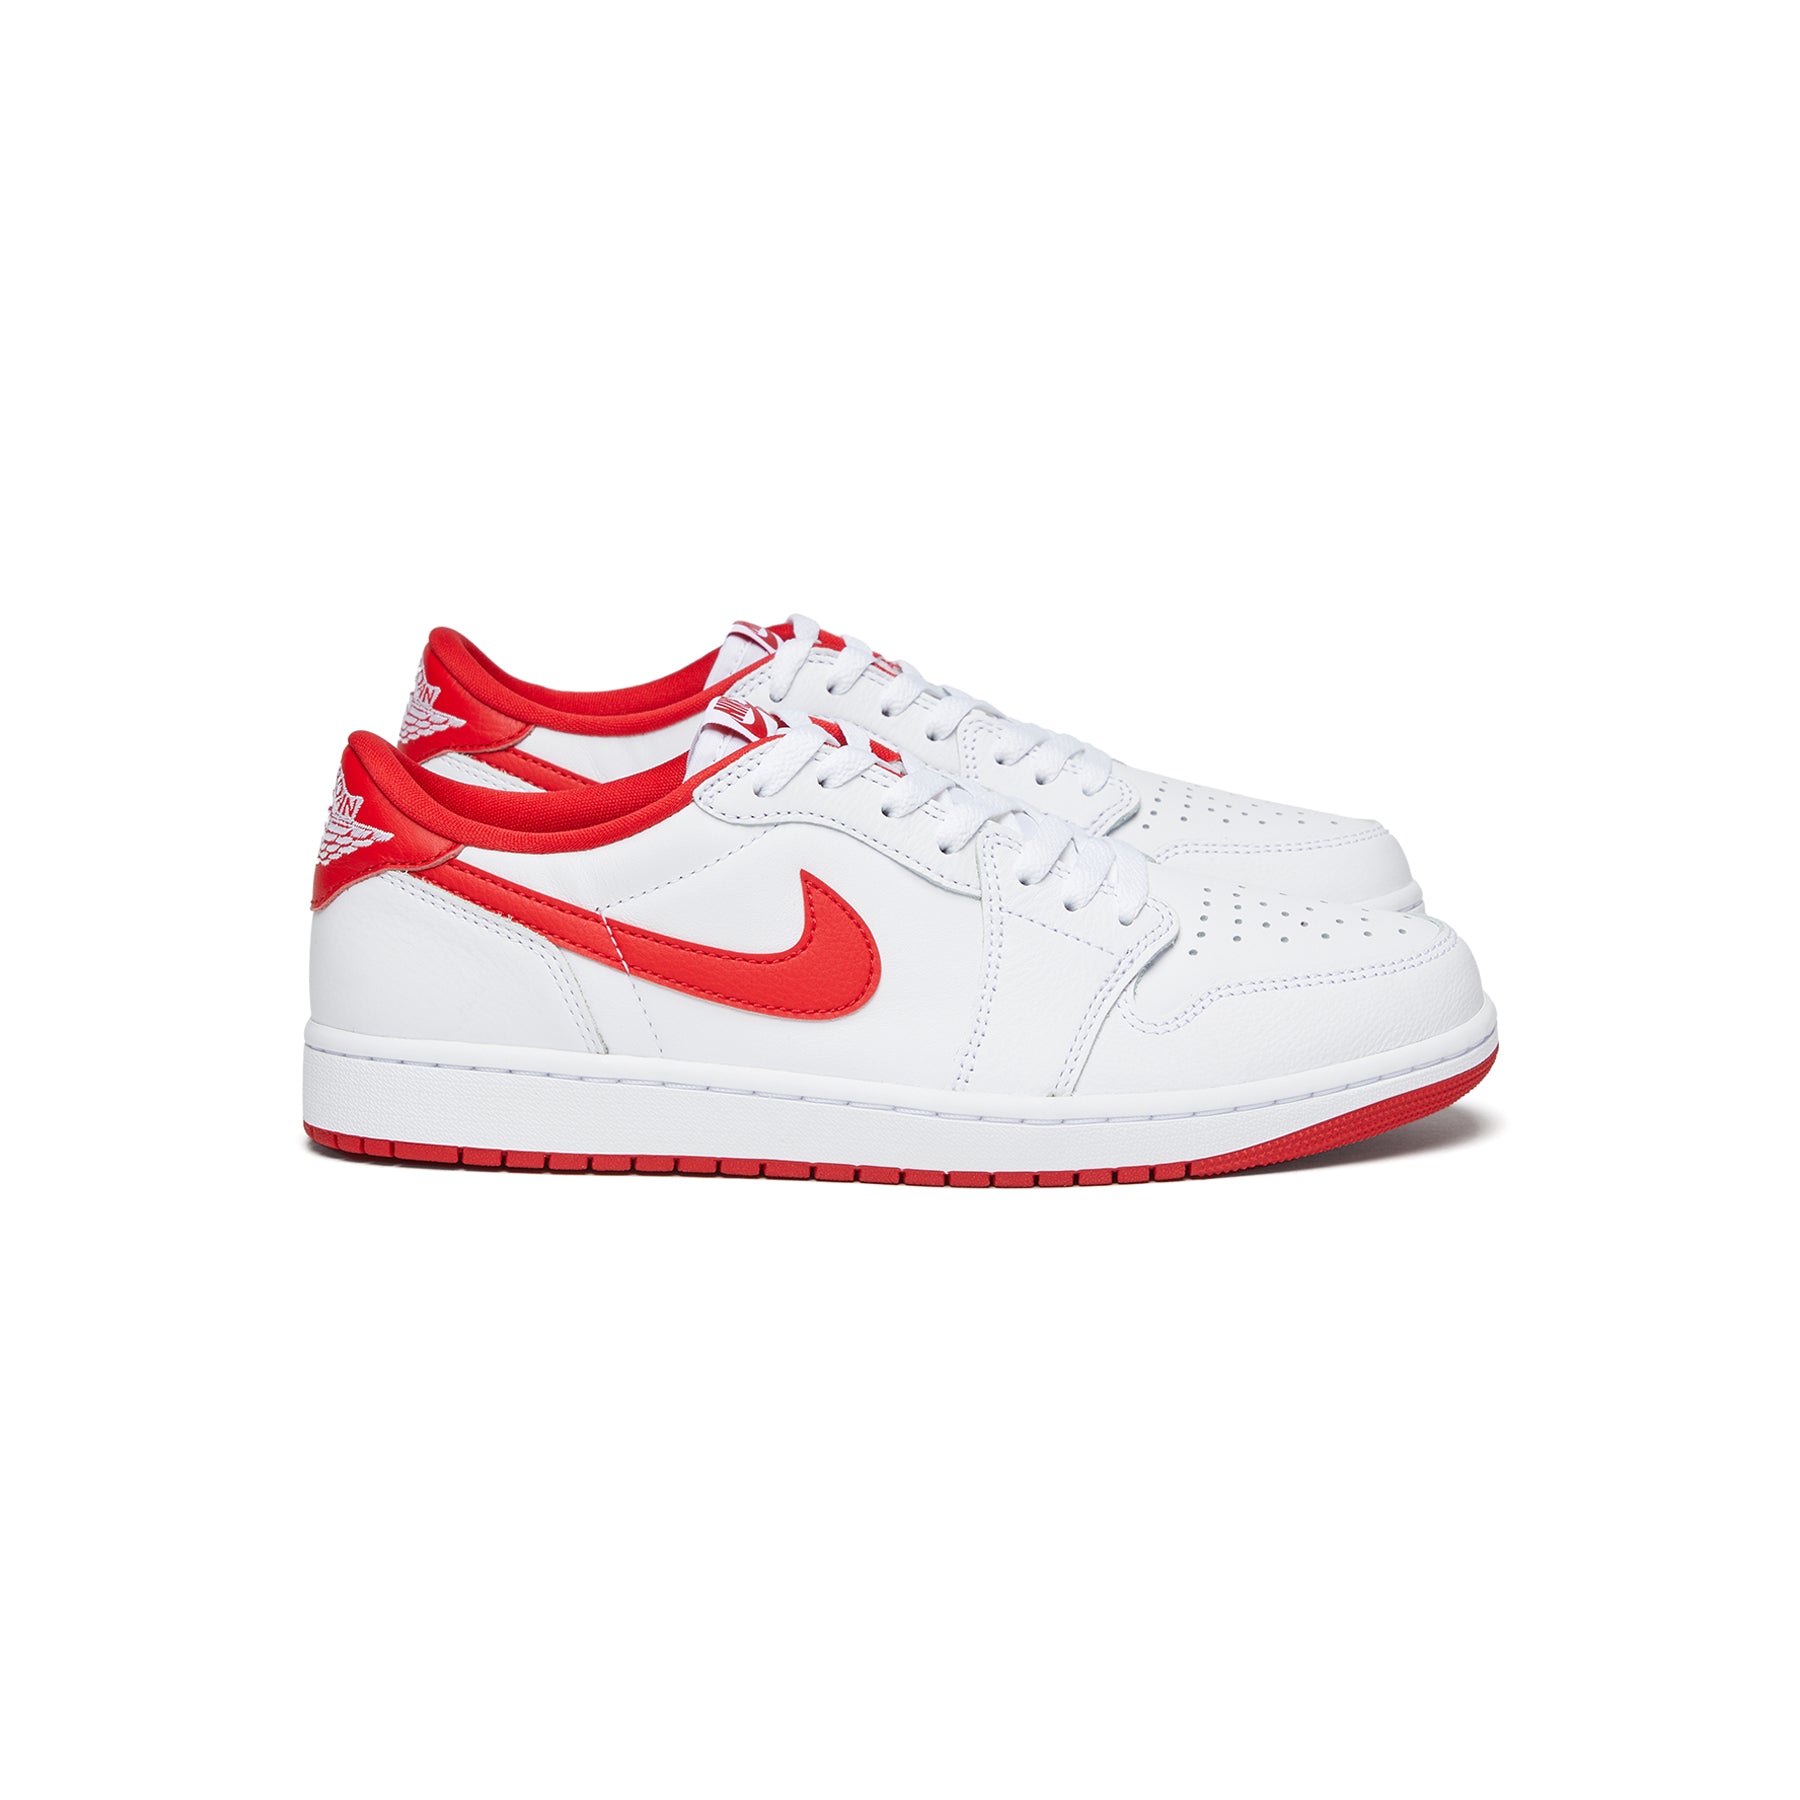 Nike Air Jordan 1 Low OG (White/University Red/White) – Concepts